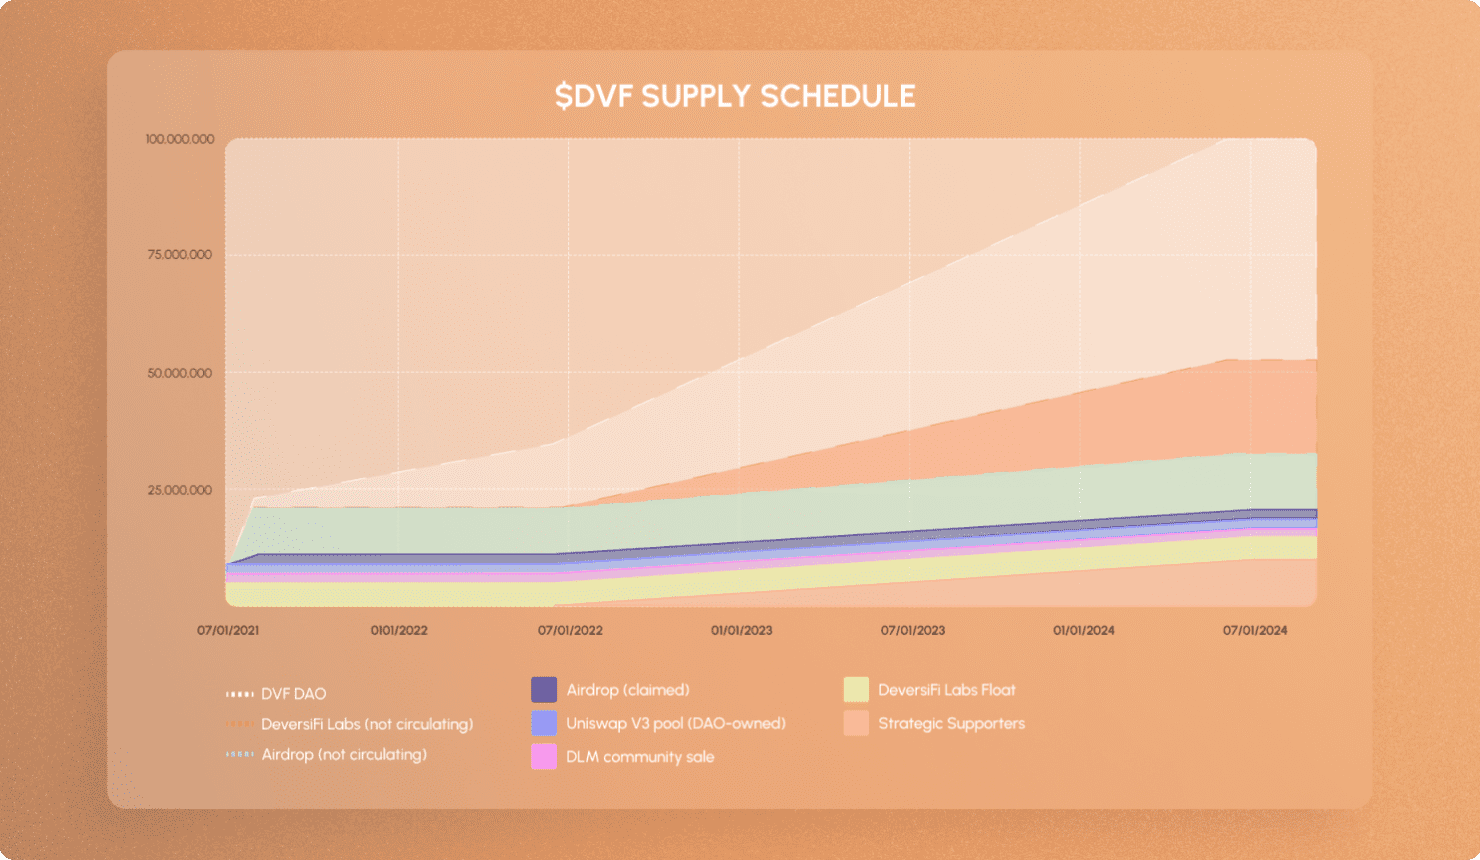 Supply schedule 1